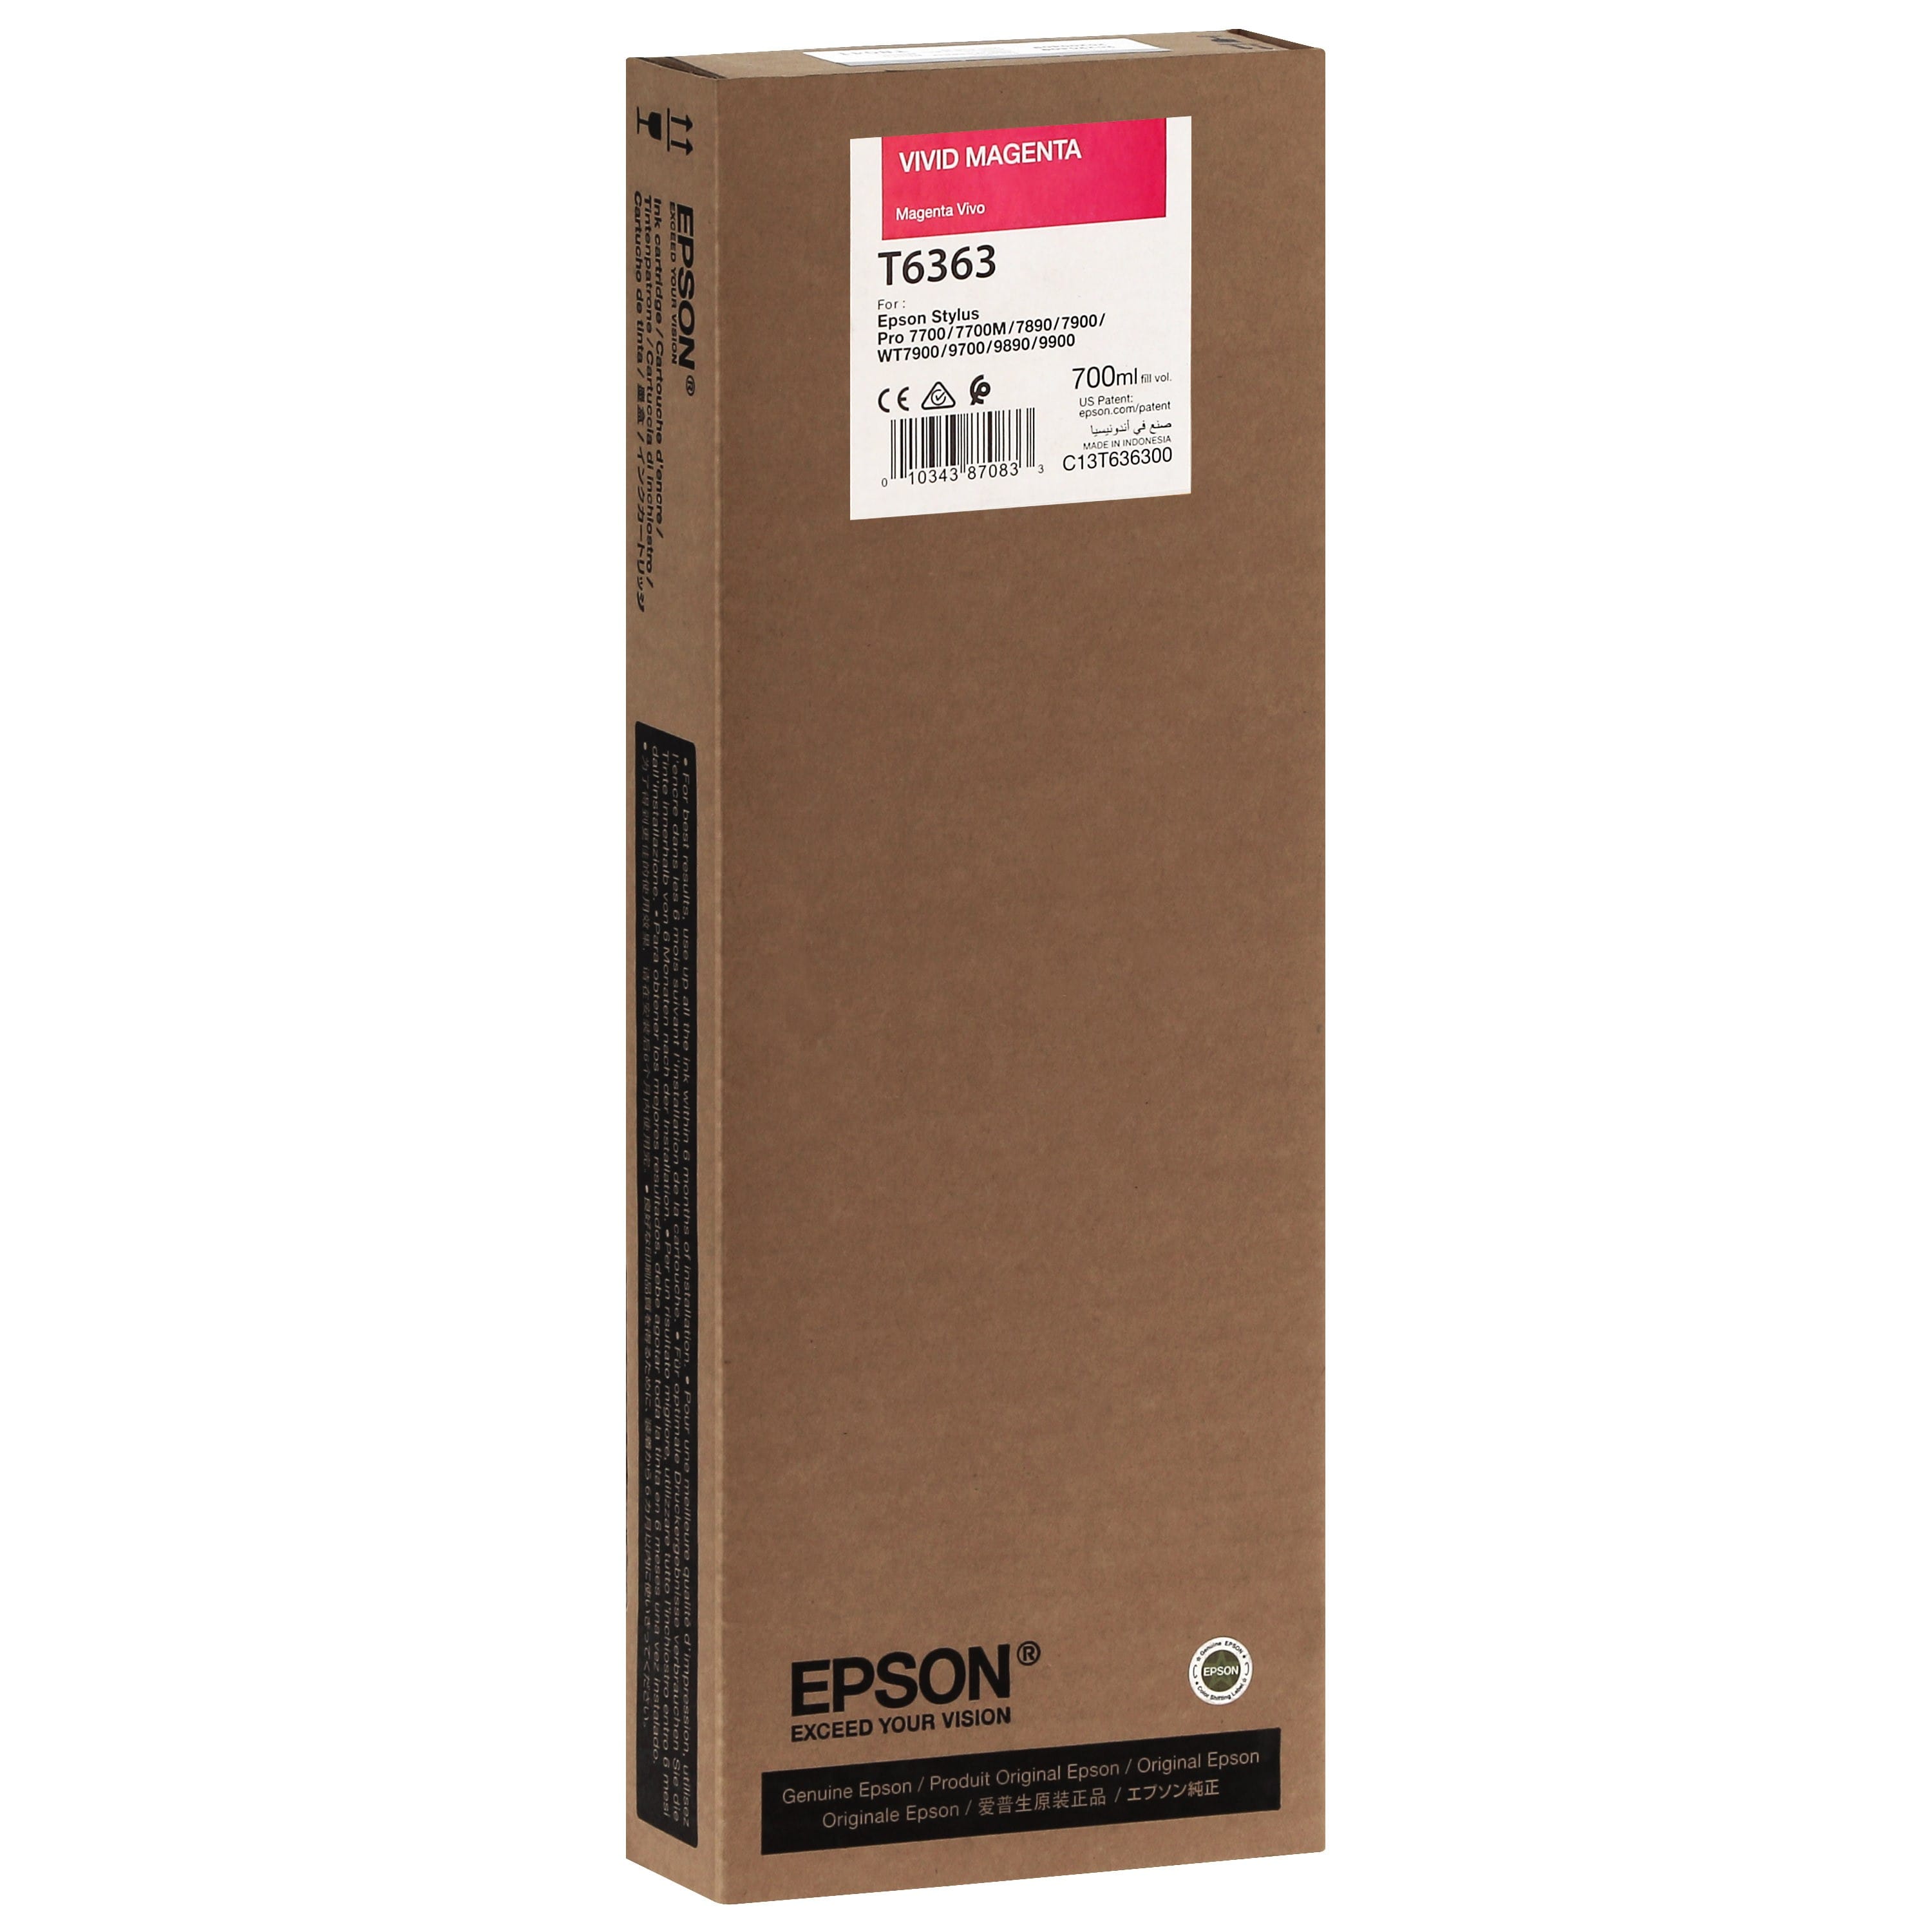 EPSON - Cartouche d'encre traceur T6363 Pour imprimante 7700/9700/7890/9890/7900/9900 Vivid Magenta - 700ml